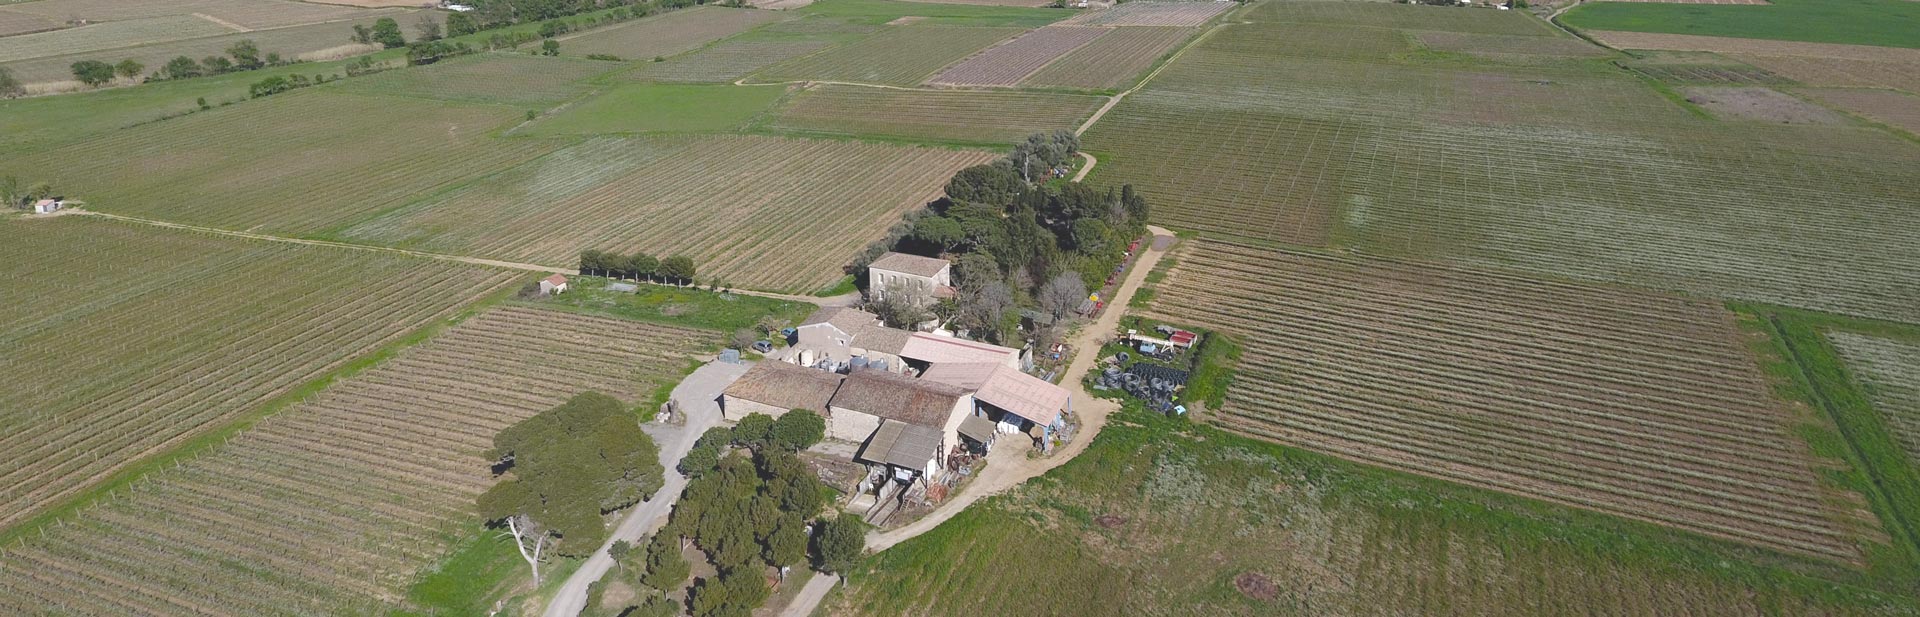 vue aérienne des bâtiments du domaine Les Charmettes et des vignes conduites en agriculture durable